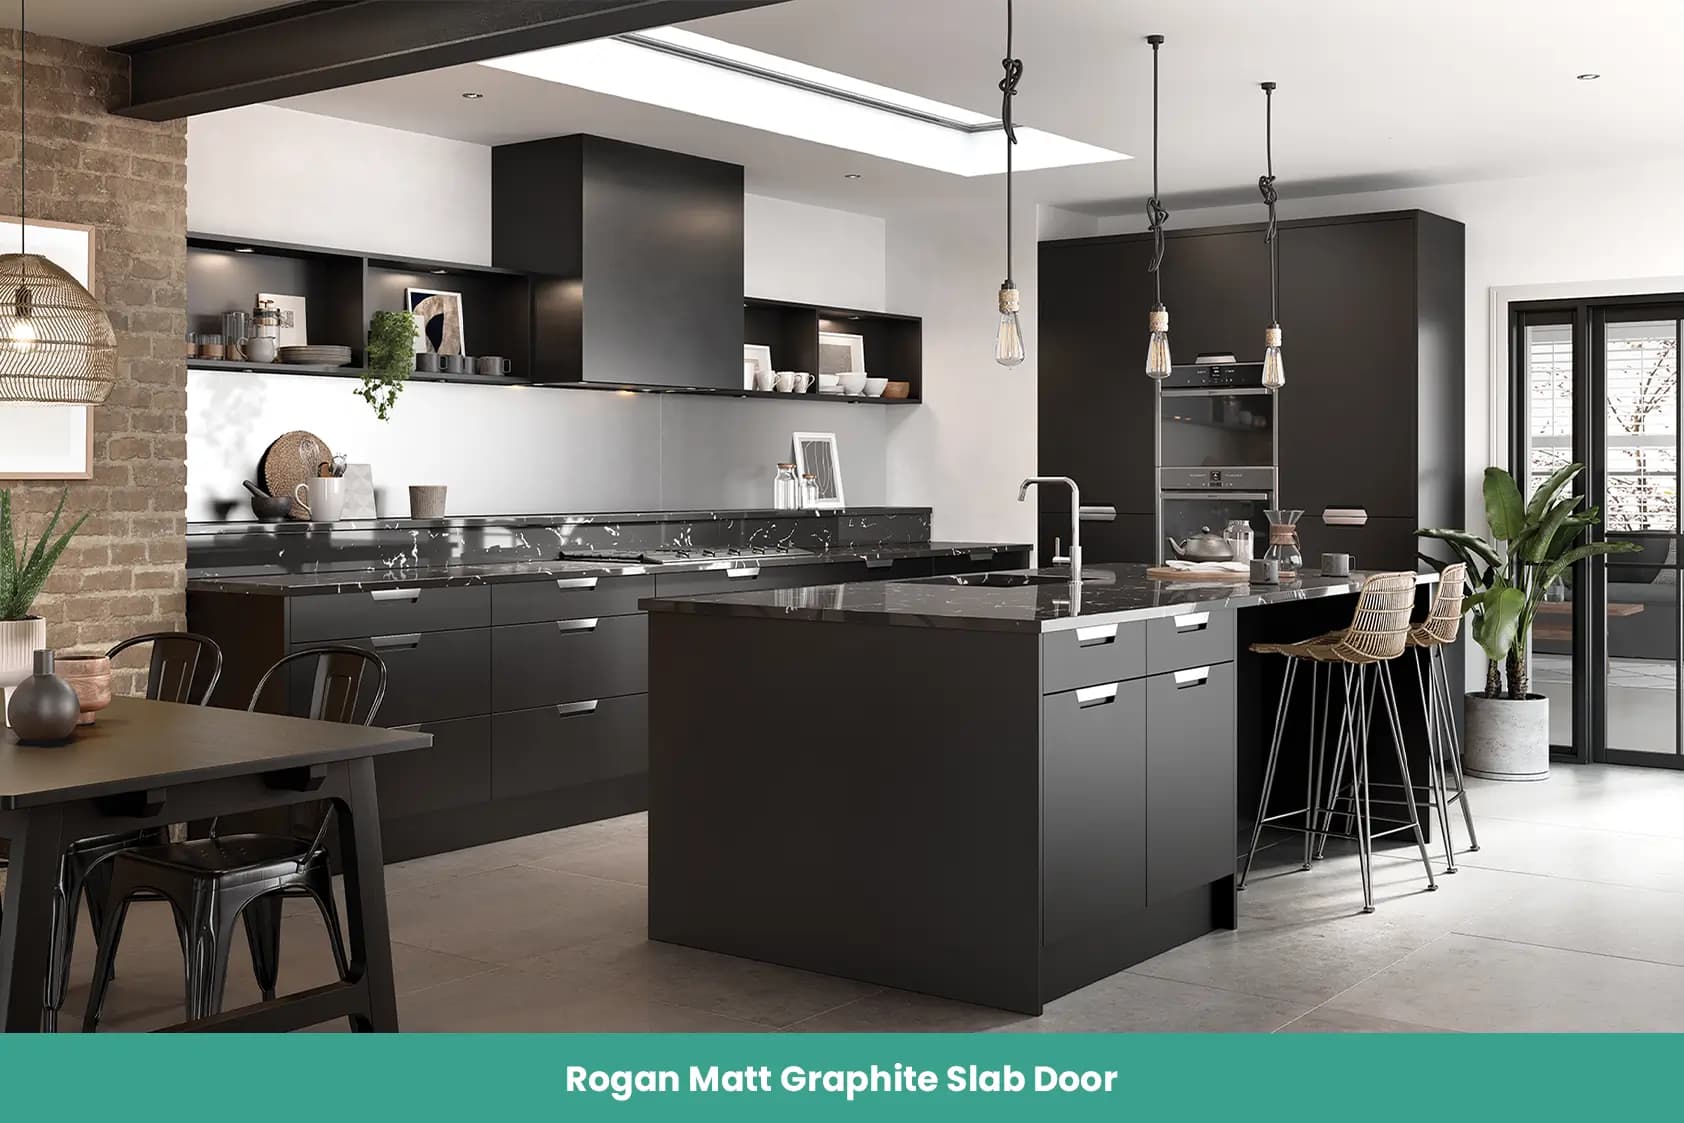 Rogan Matt Graphite Slab Door Kitchen Integrated Metal Handle